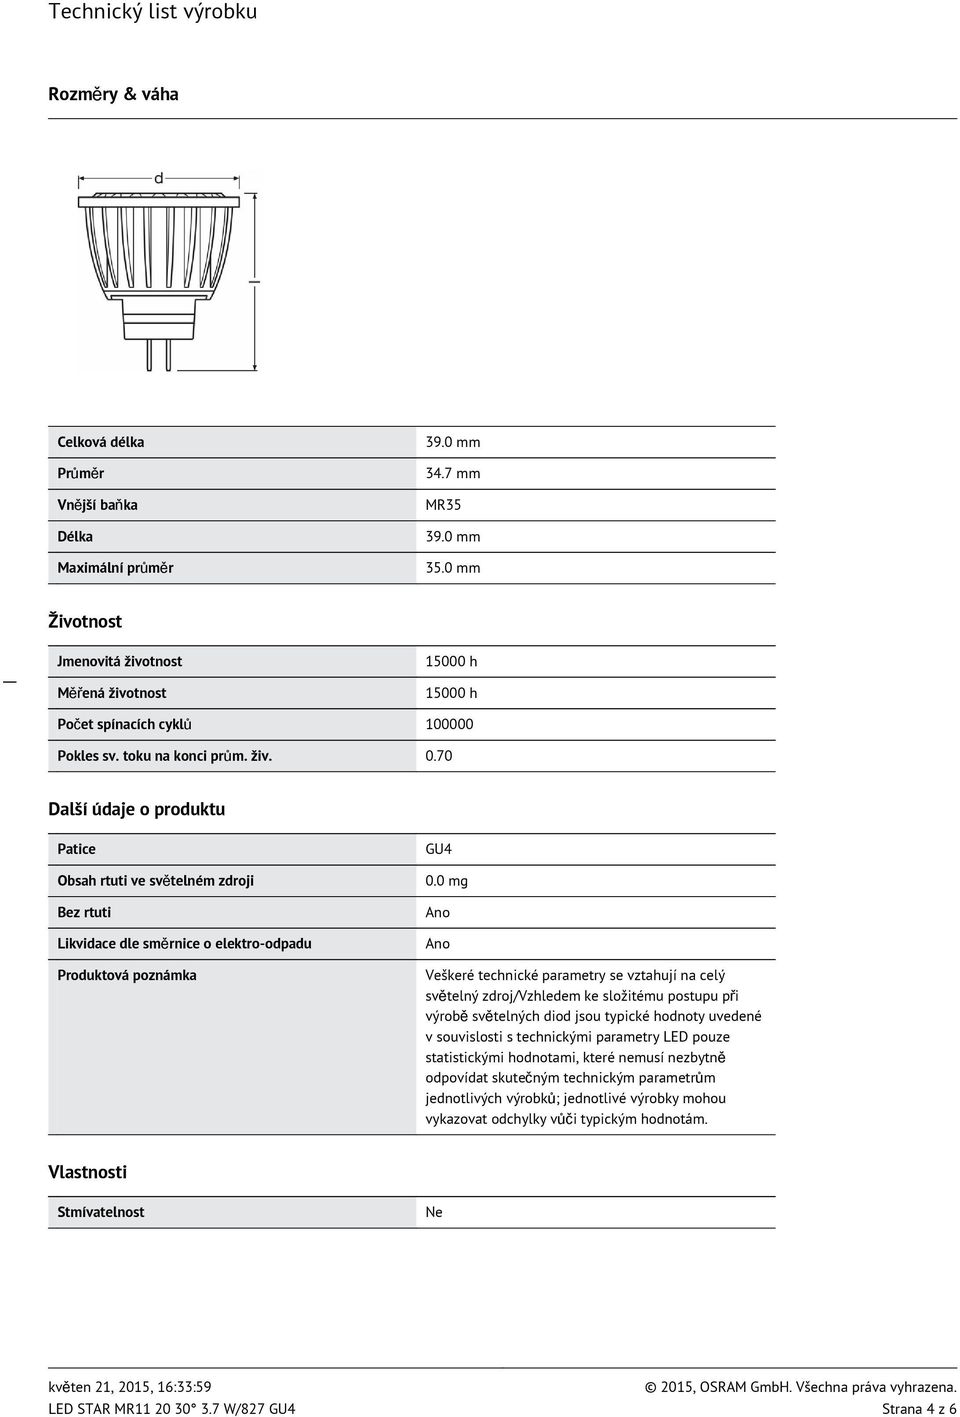 70 Další údaje o produktu Patice Obsah rtuti ve světelném zdroji Bez rtuti Likvidace dle směrnice o elektro-odpadu Produktová poznámka GU4 0.